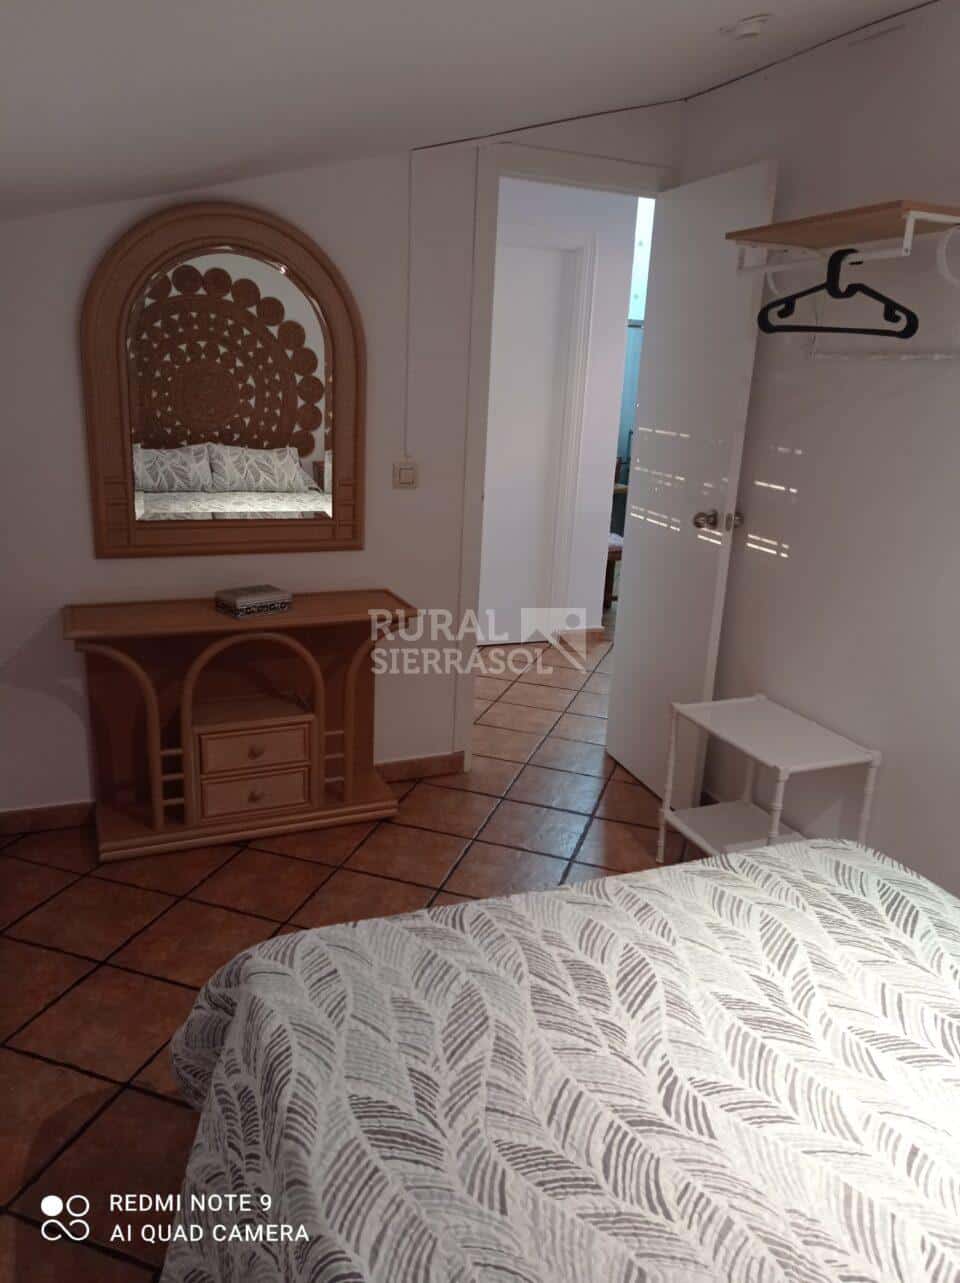 Habitación de casa rural en Algodonales Cádiz) referencia 4133